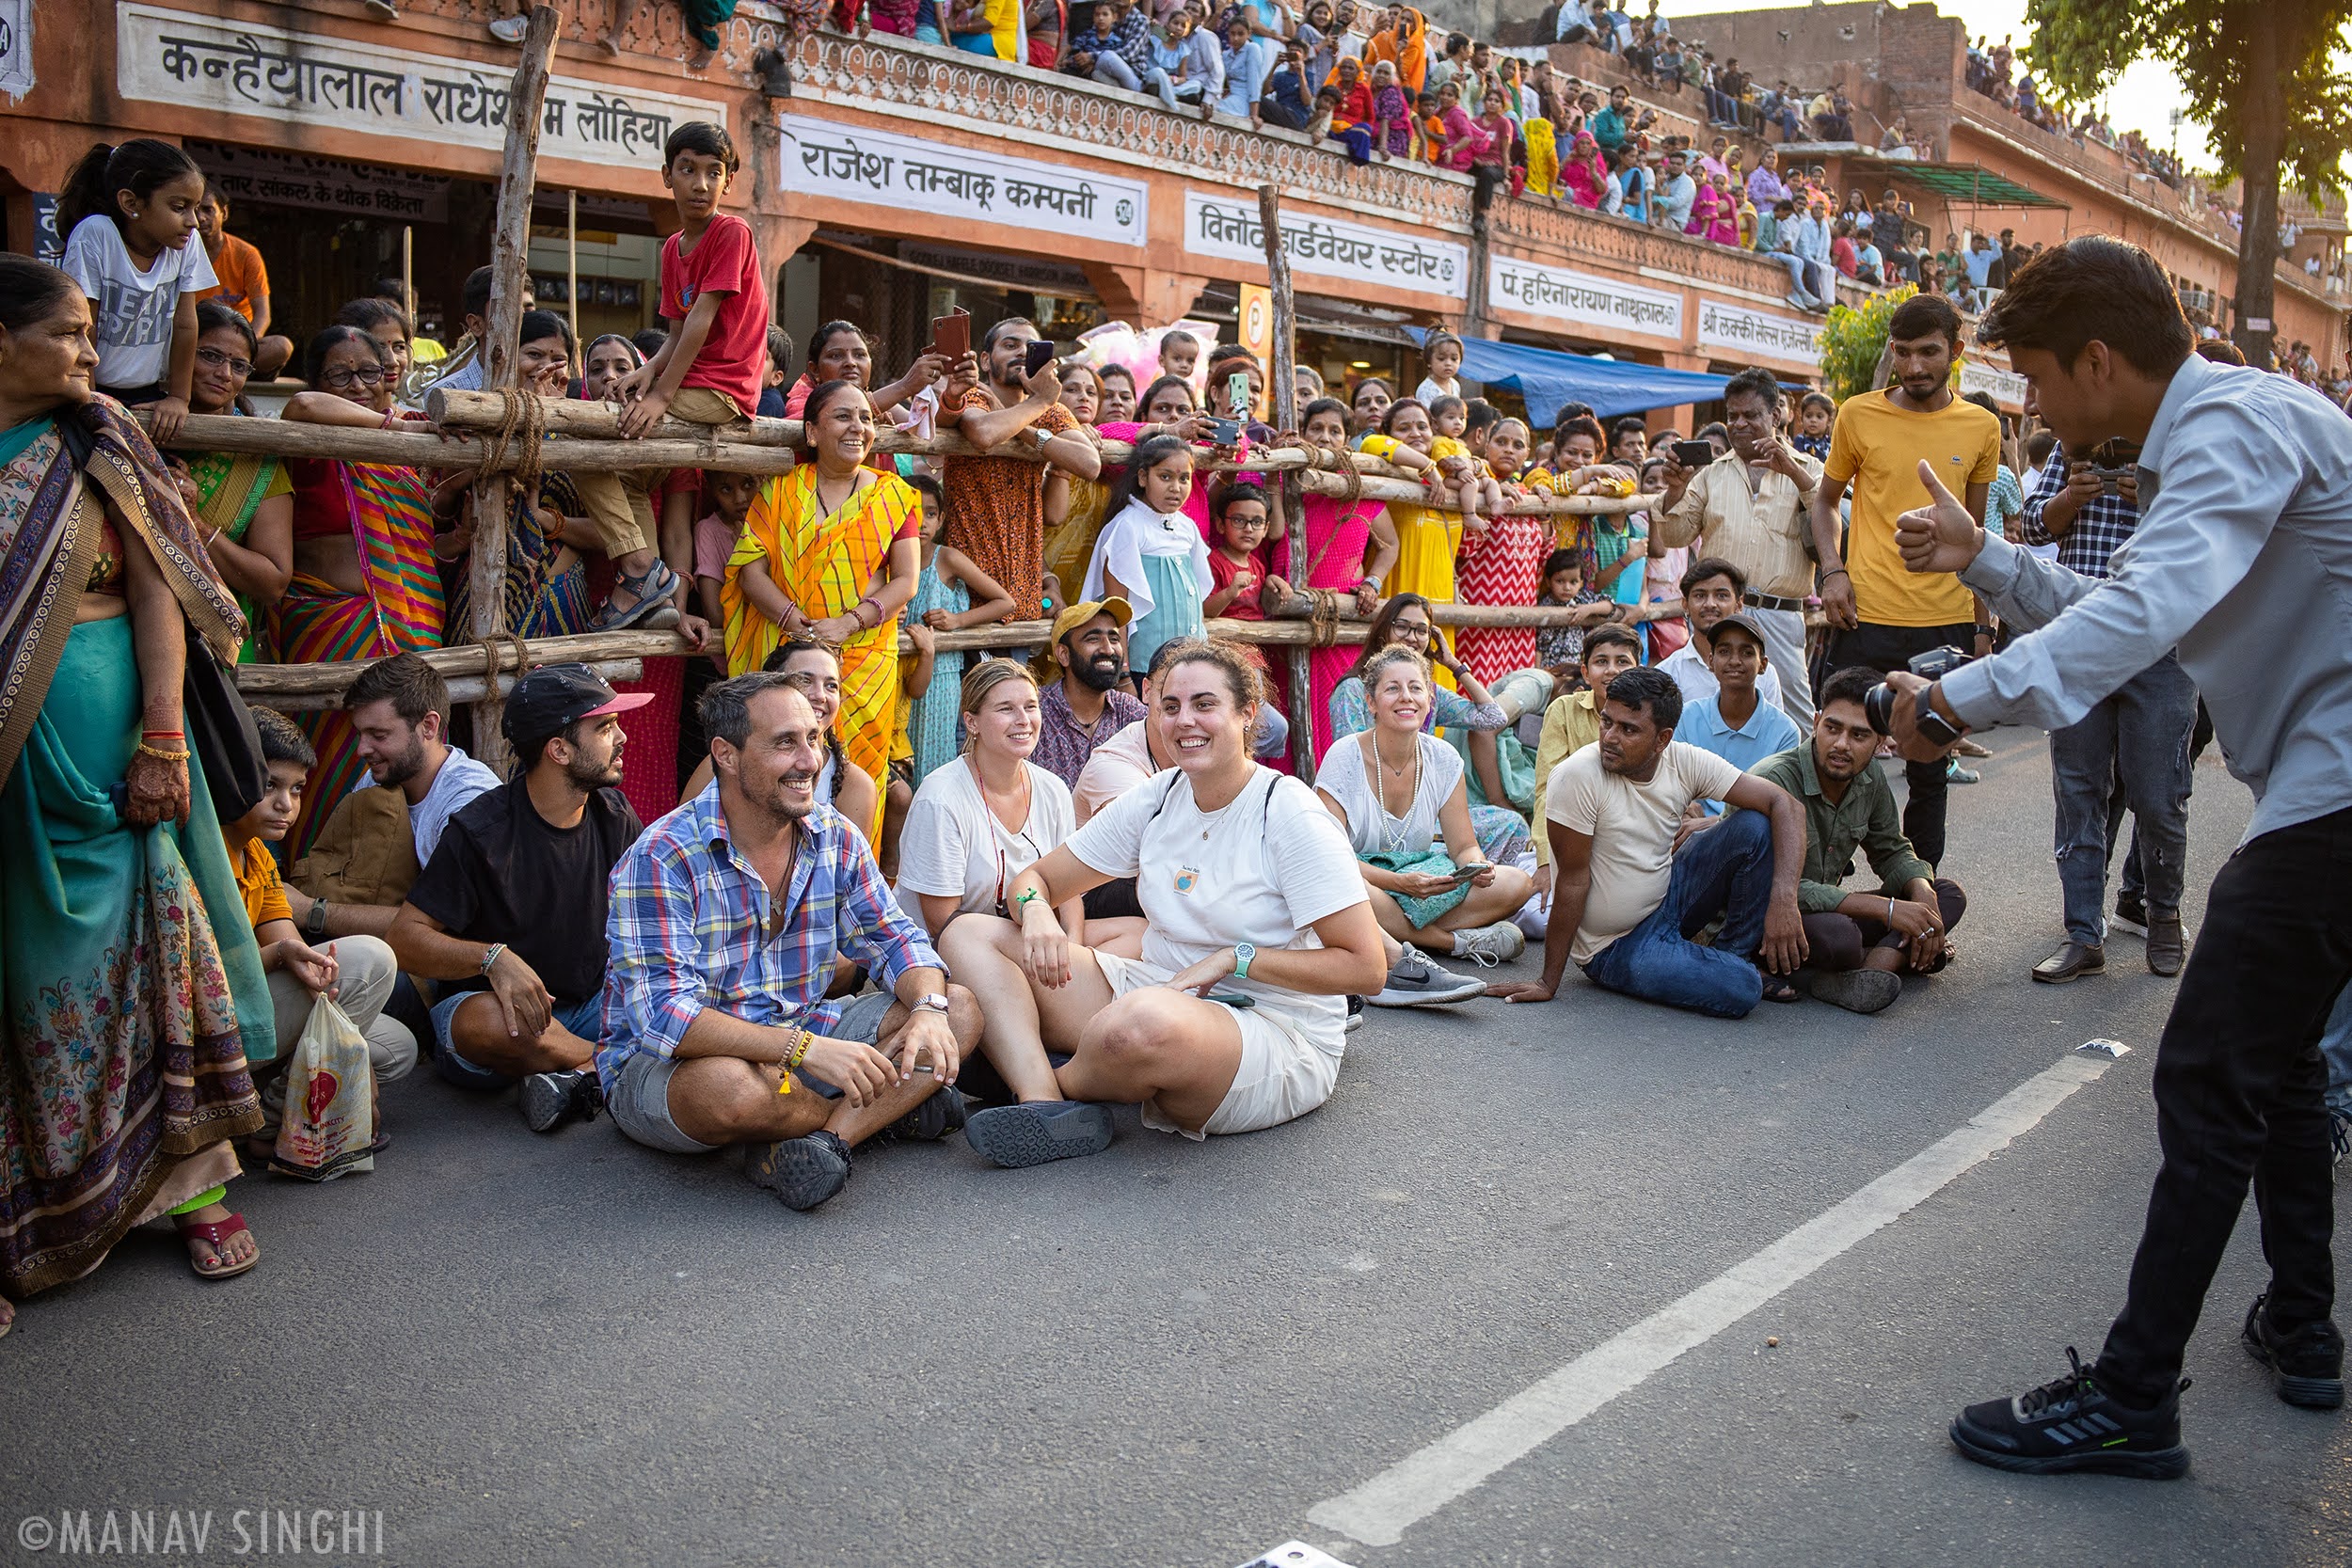 Street Shot Taken around Royal Procession of Haryali Teej, Jaipur.